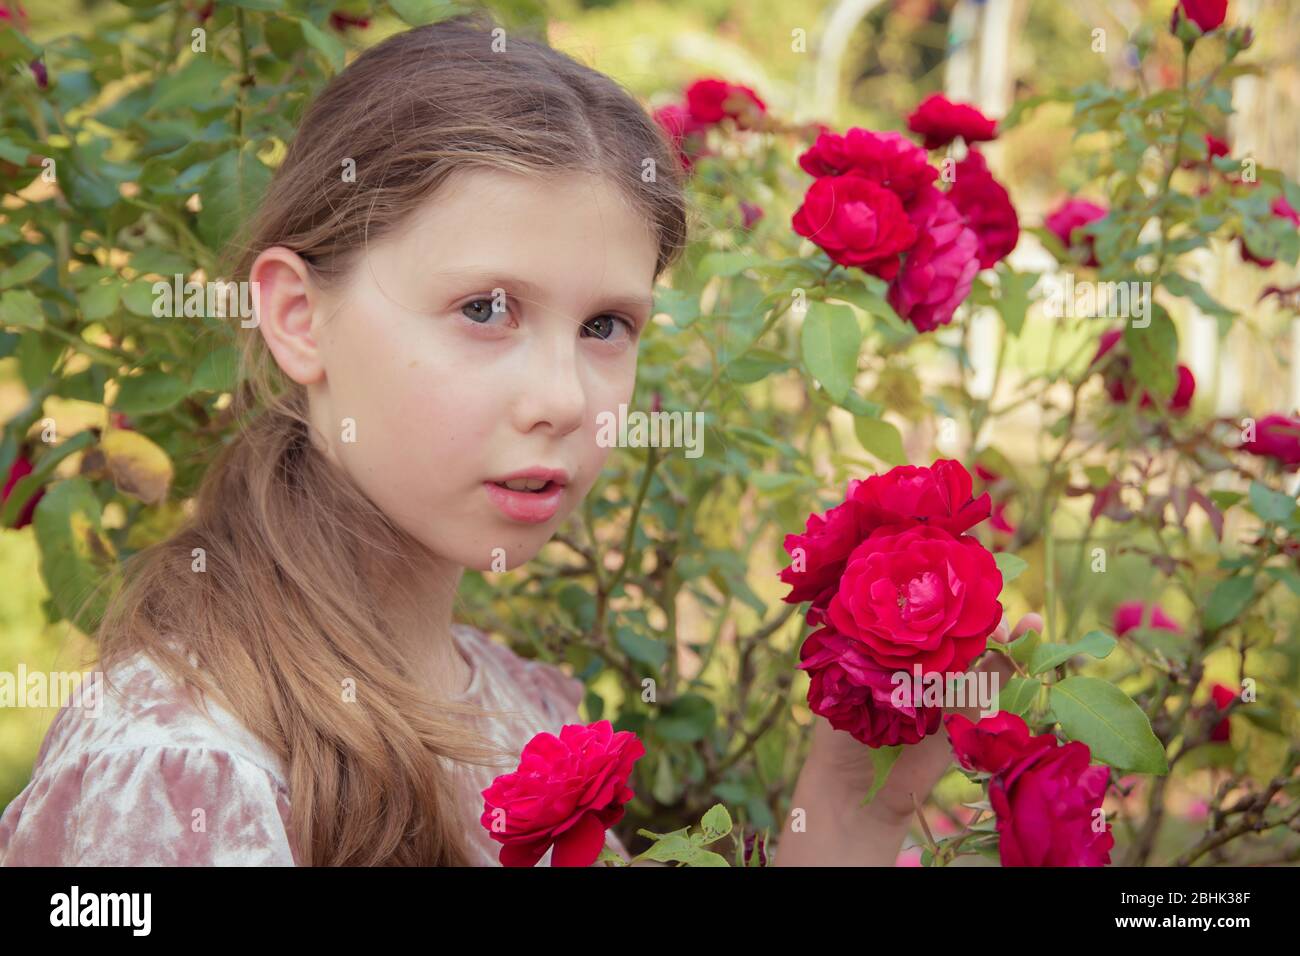 Ein frisches Porträt eines hübschen Mädchens, das Rosen in einem Sommergarten hält Stockfoto